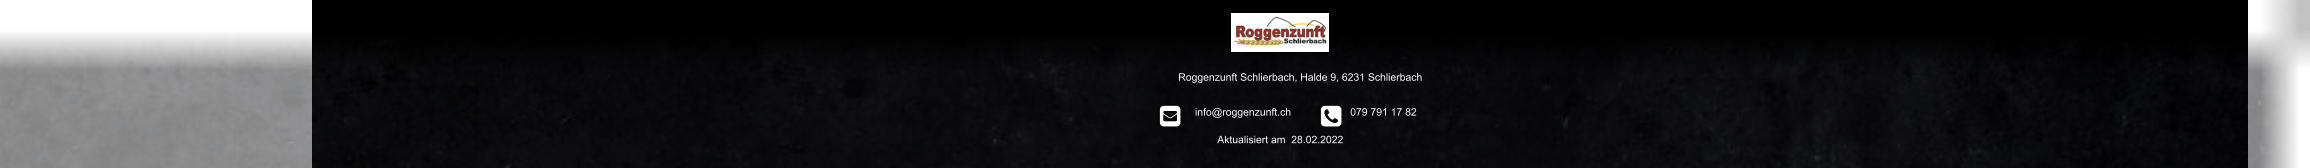 Roggenzunft Schlierbach, Halde 9, 6231 Schlierbach          info@roggenzunft.ch            079 791 17 82 Aktualisiert am  28.02.2022                                                                                                  